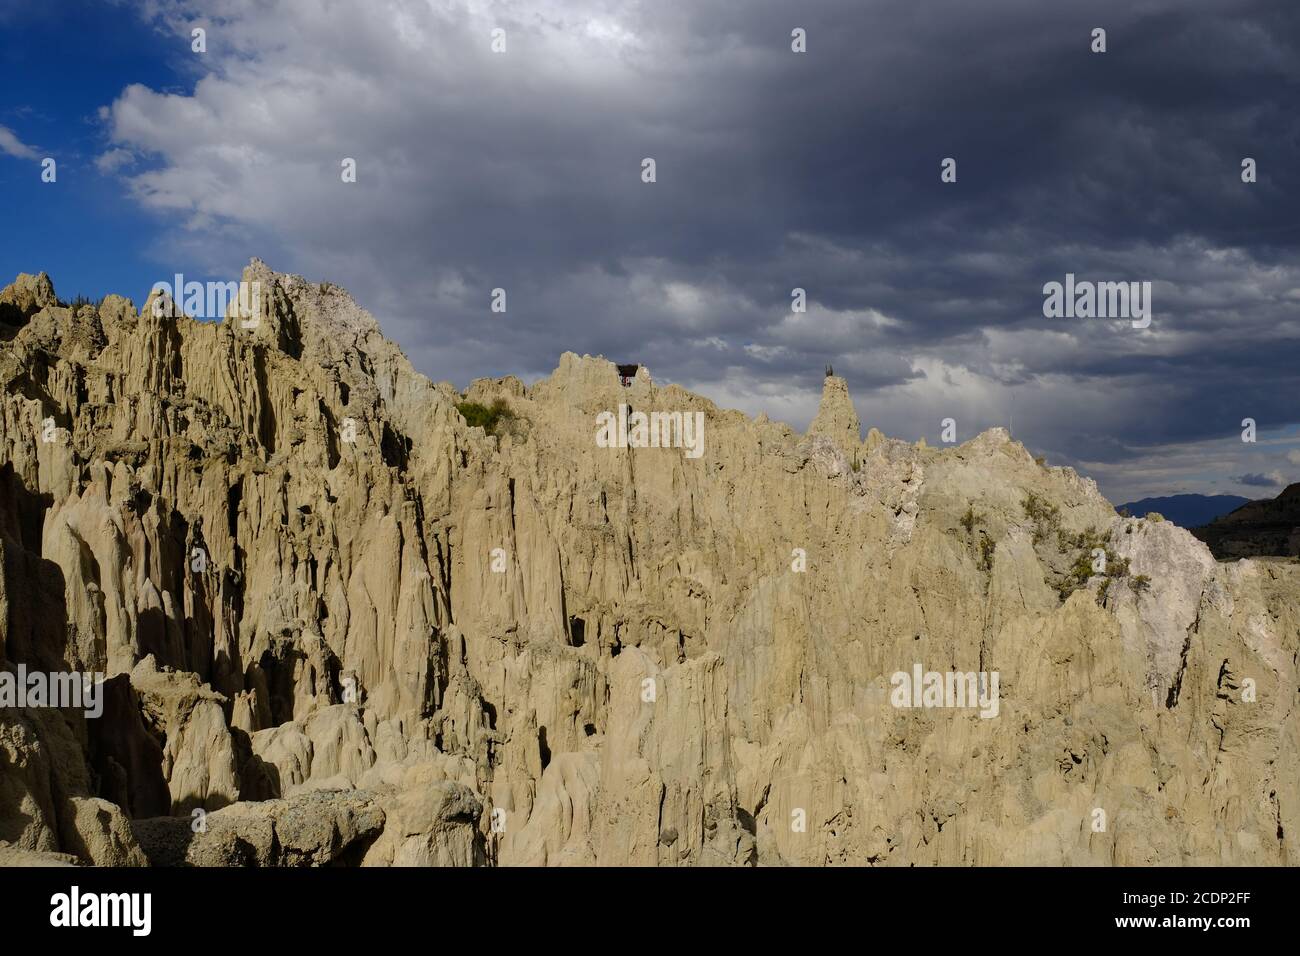 Bolivia La Paz Valle de la Luna - Moonlike landscape view Stock Photo